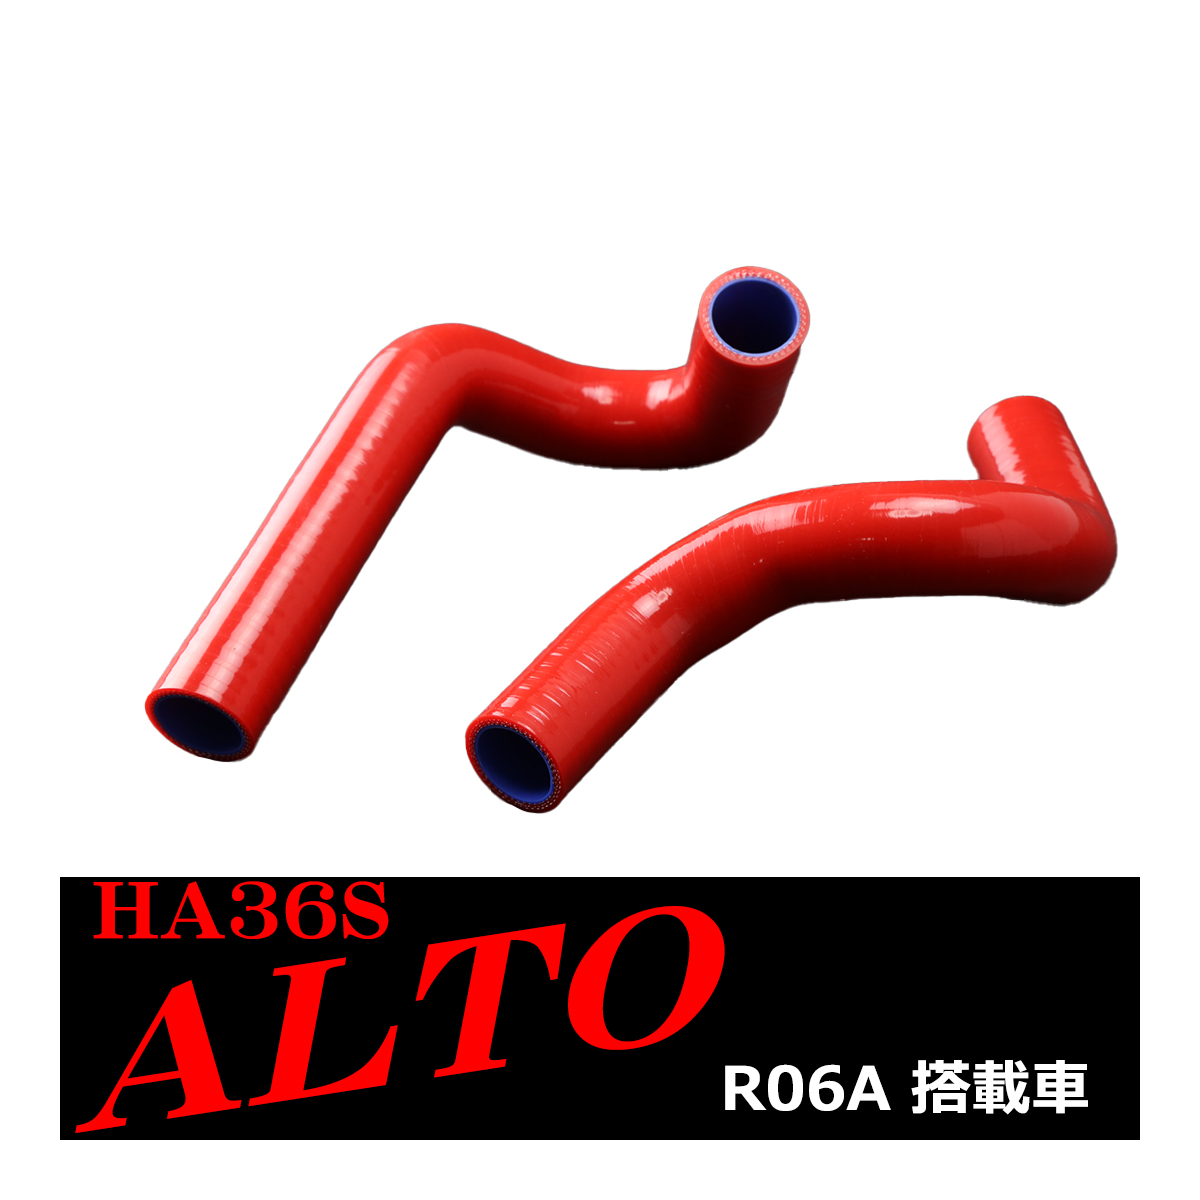 HA36S アルト ターボRS / アルト ワークス シリコン ラジエター ホース R06A スズキ 3PLY レッド SZ153-R